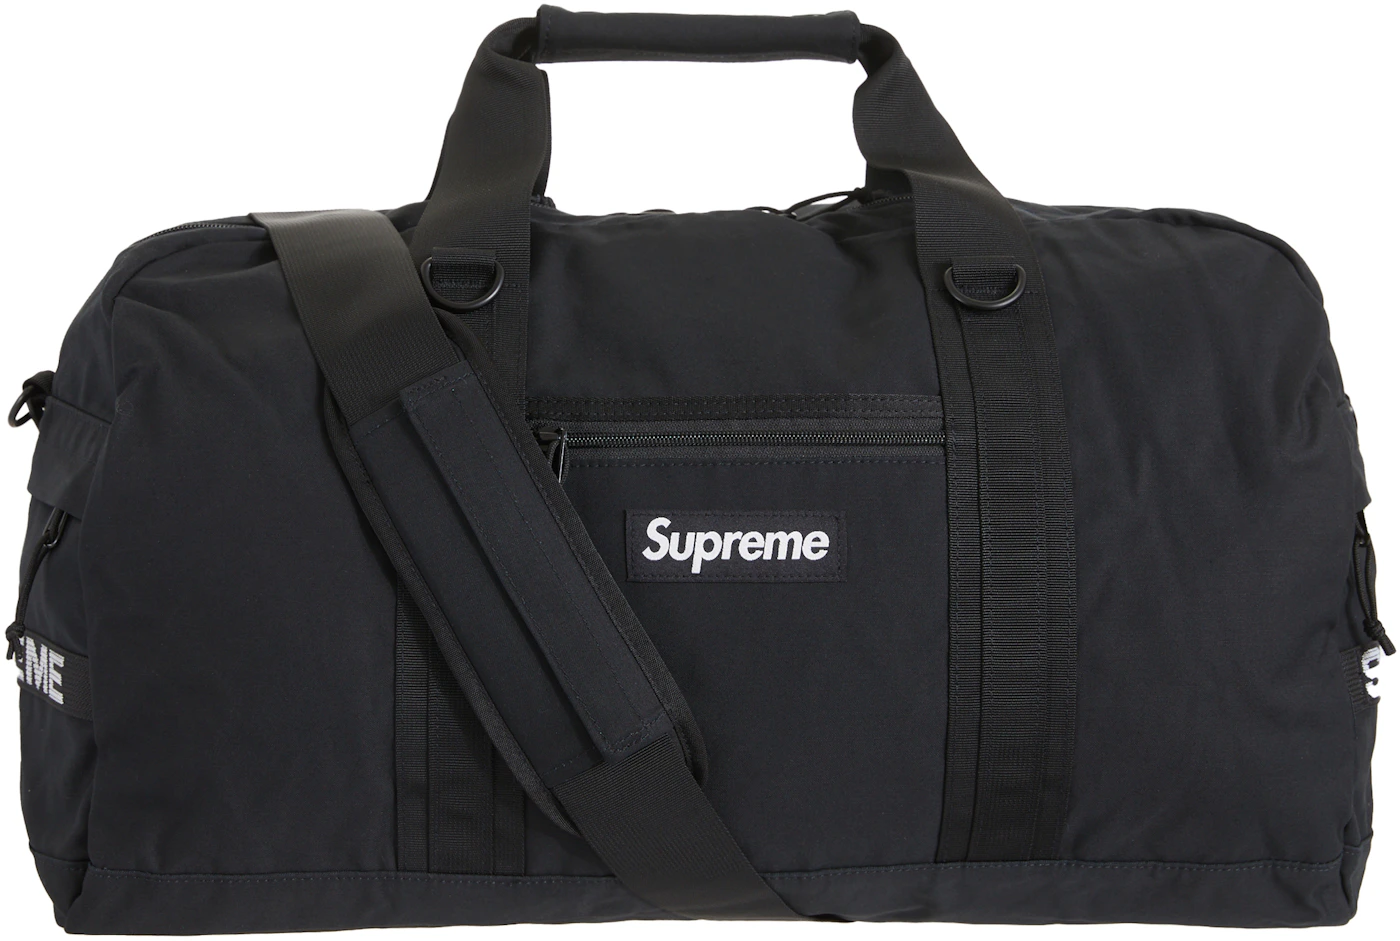 Supreme Duffle Bag 'Black' | Men's